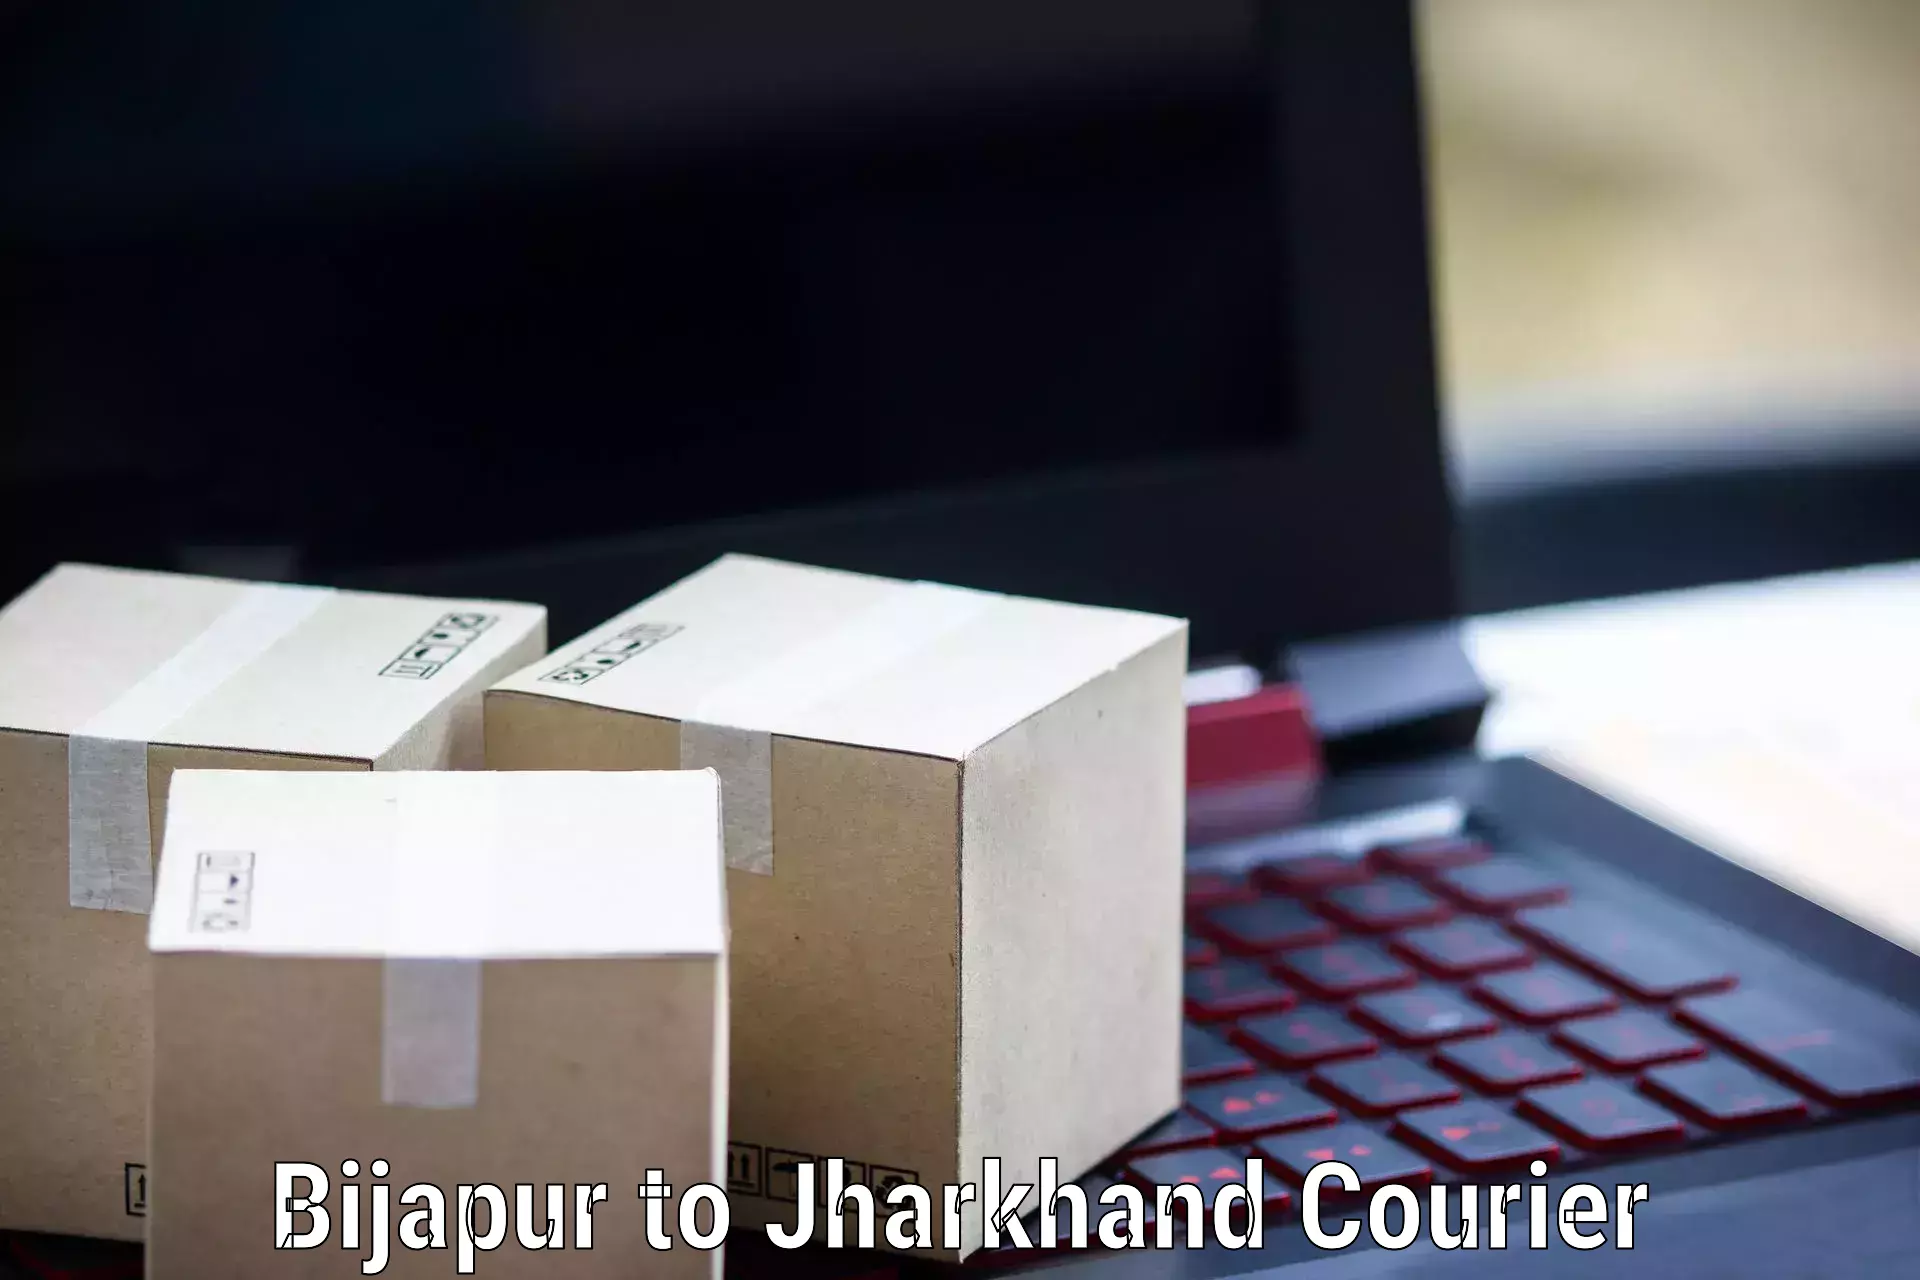 Courier service innovation Bijapur to Jamshedpur